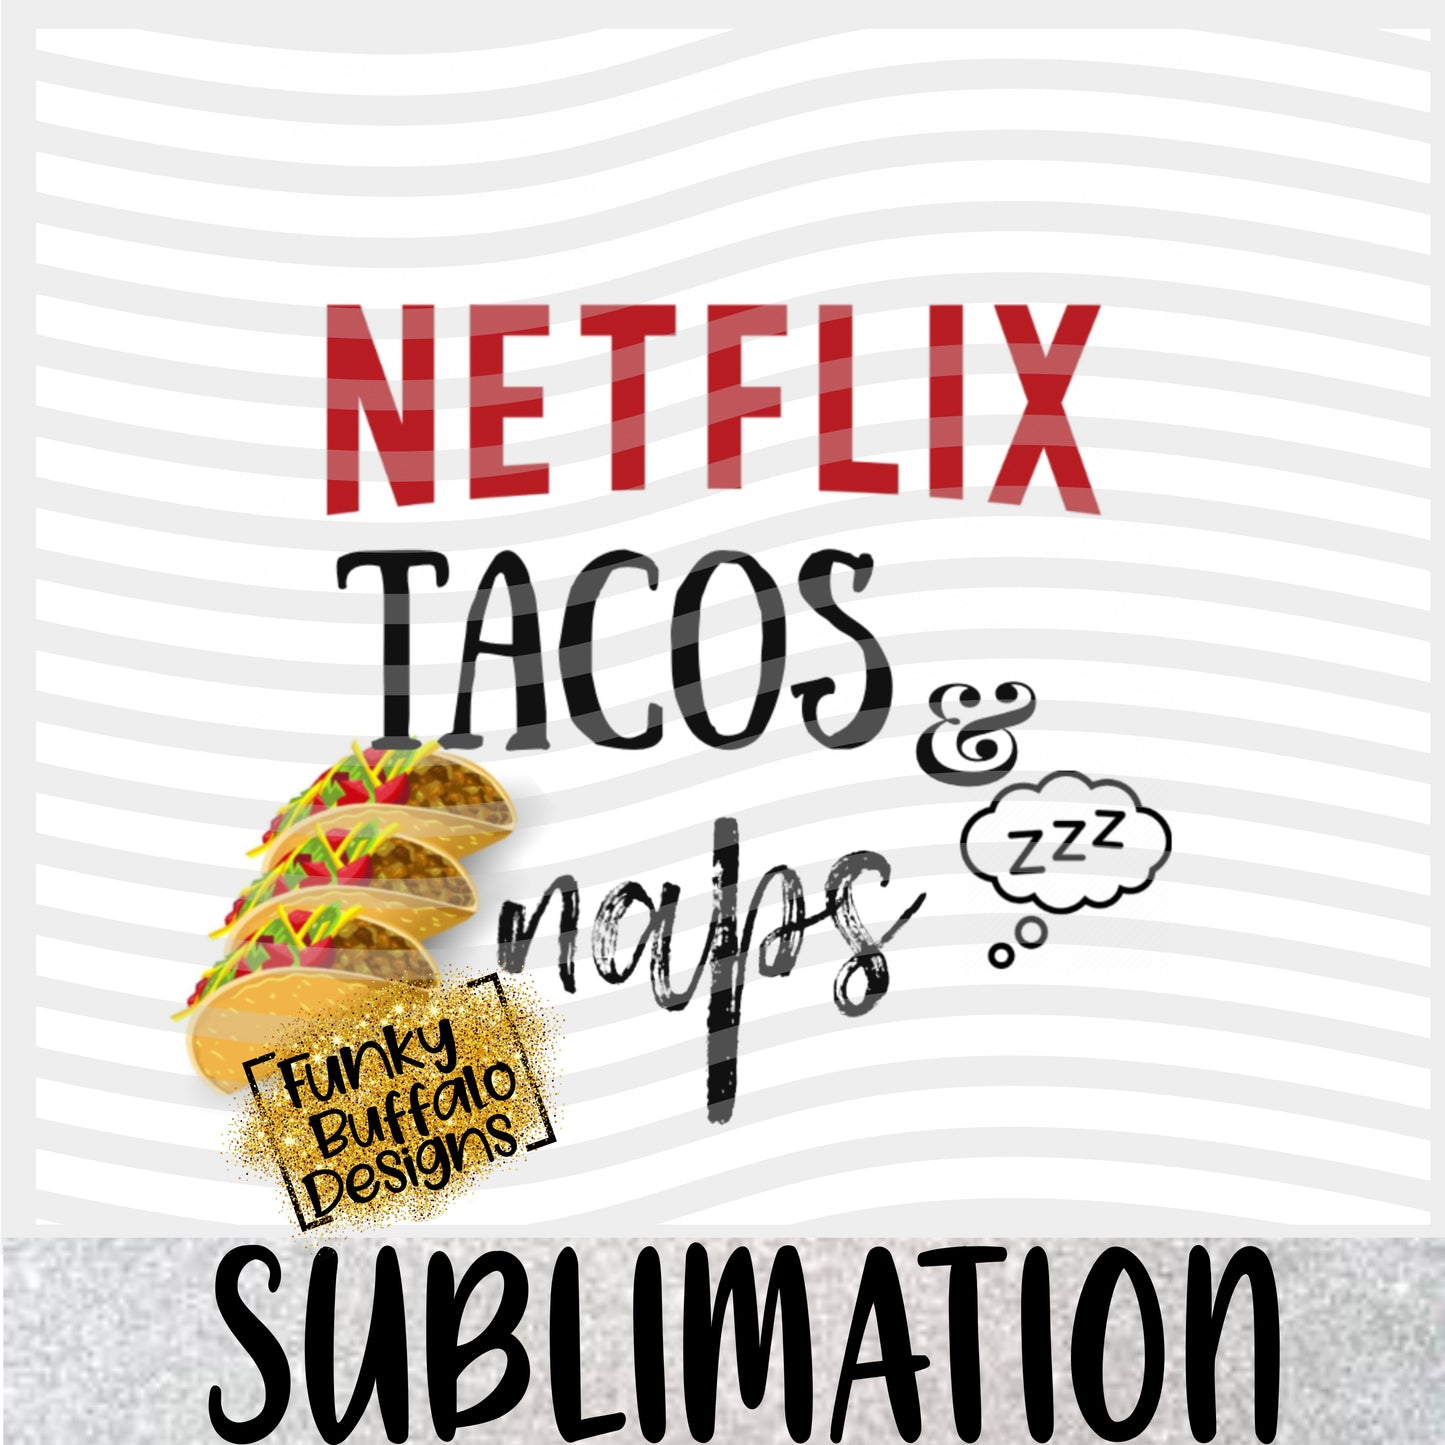 Netflix Tacos naps